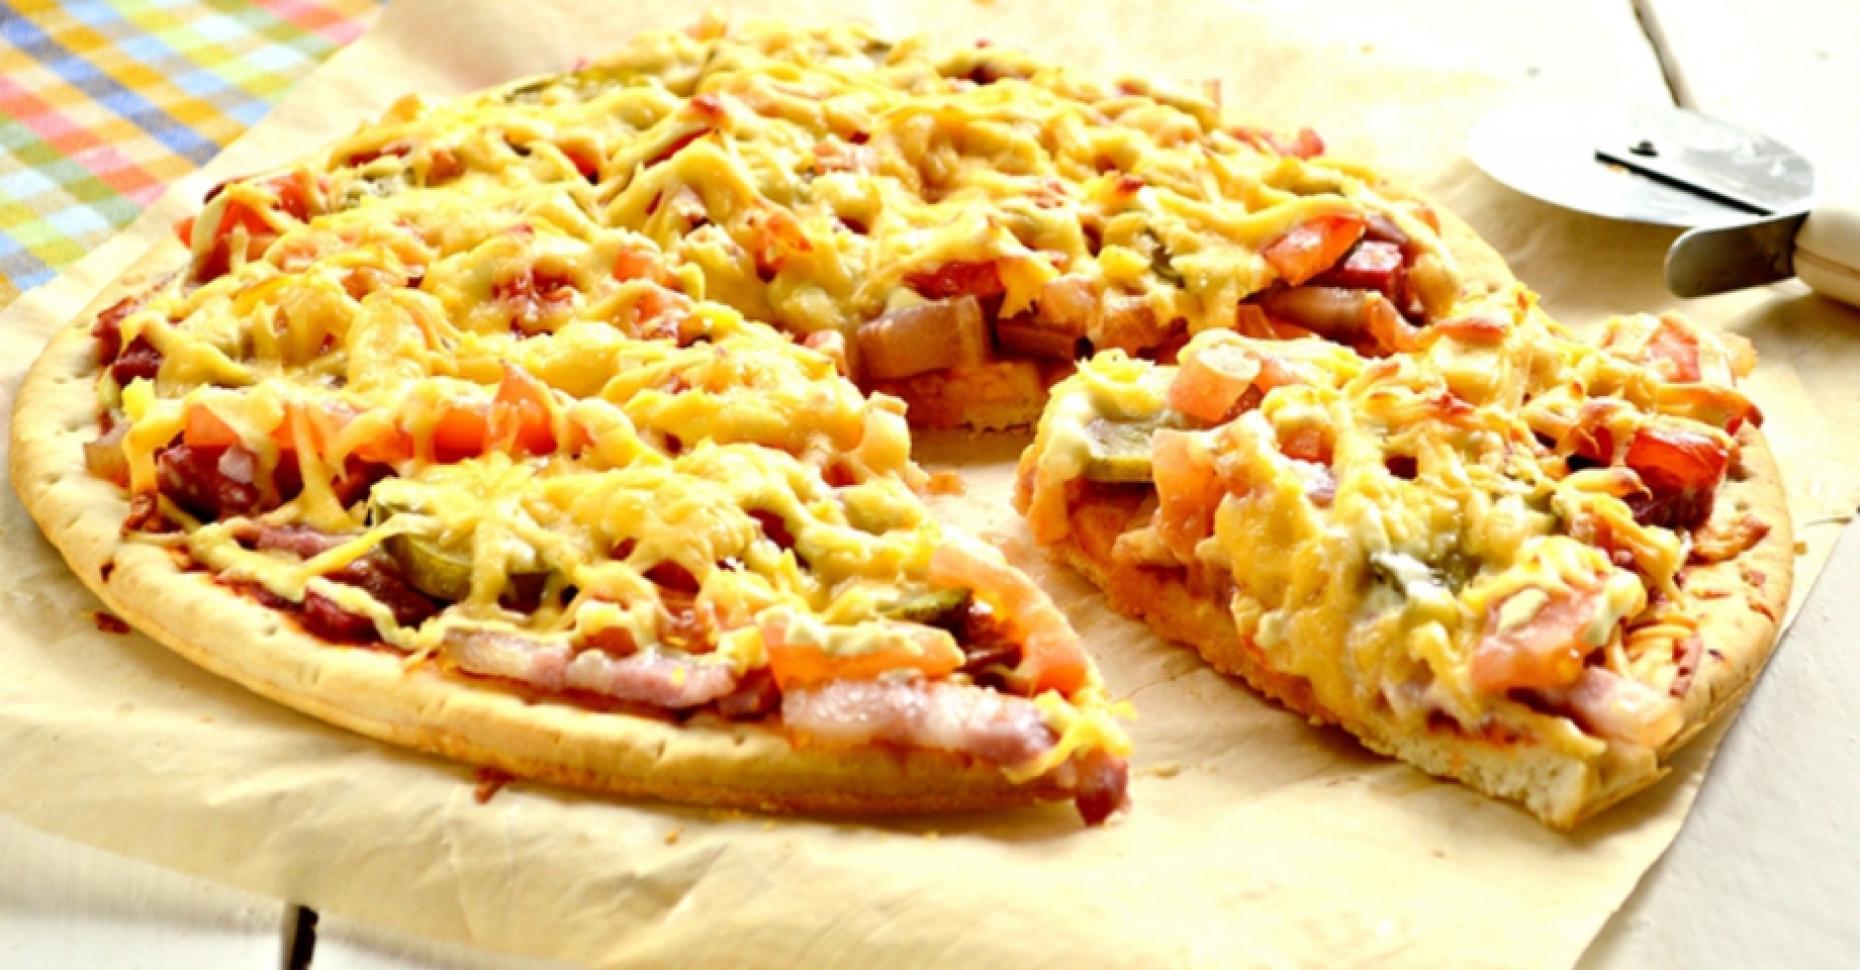 пицца домашняя рецепт приготовления с фото пошагово с колбасой и сыром фото 119